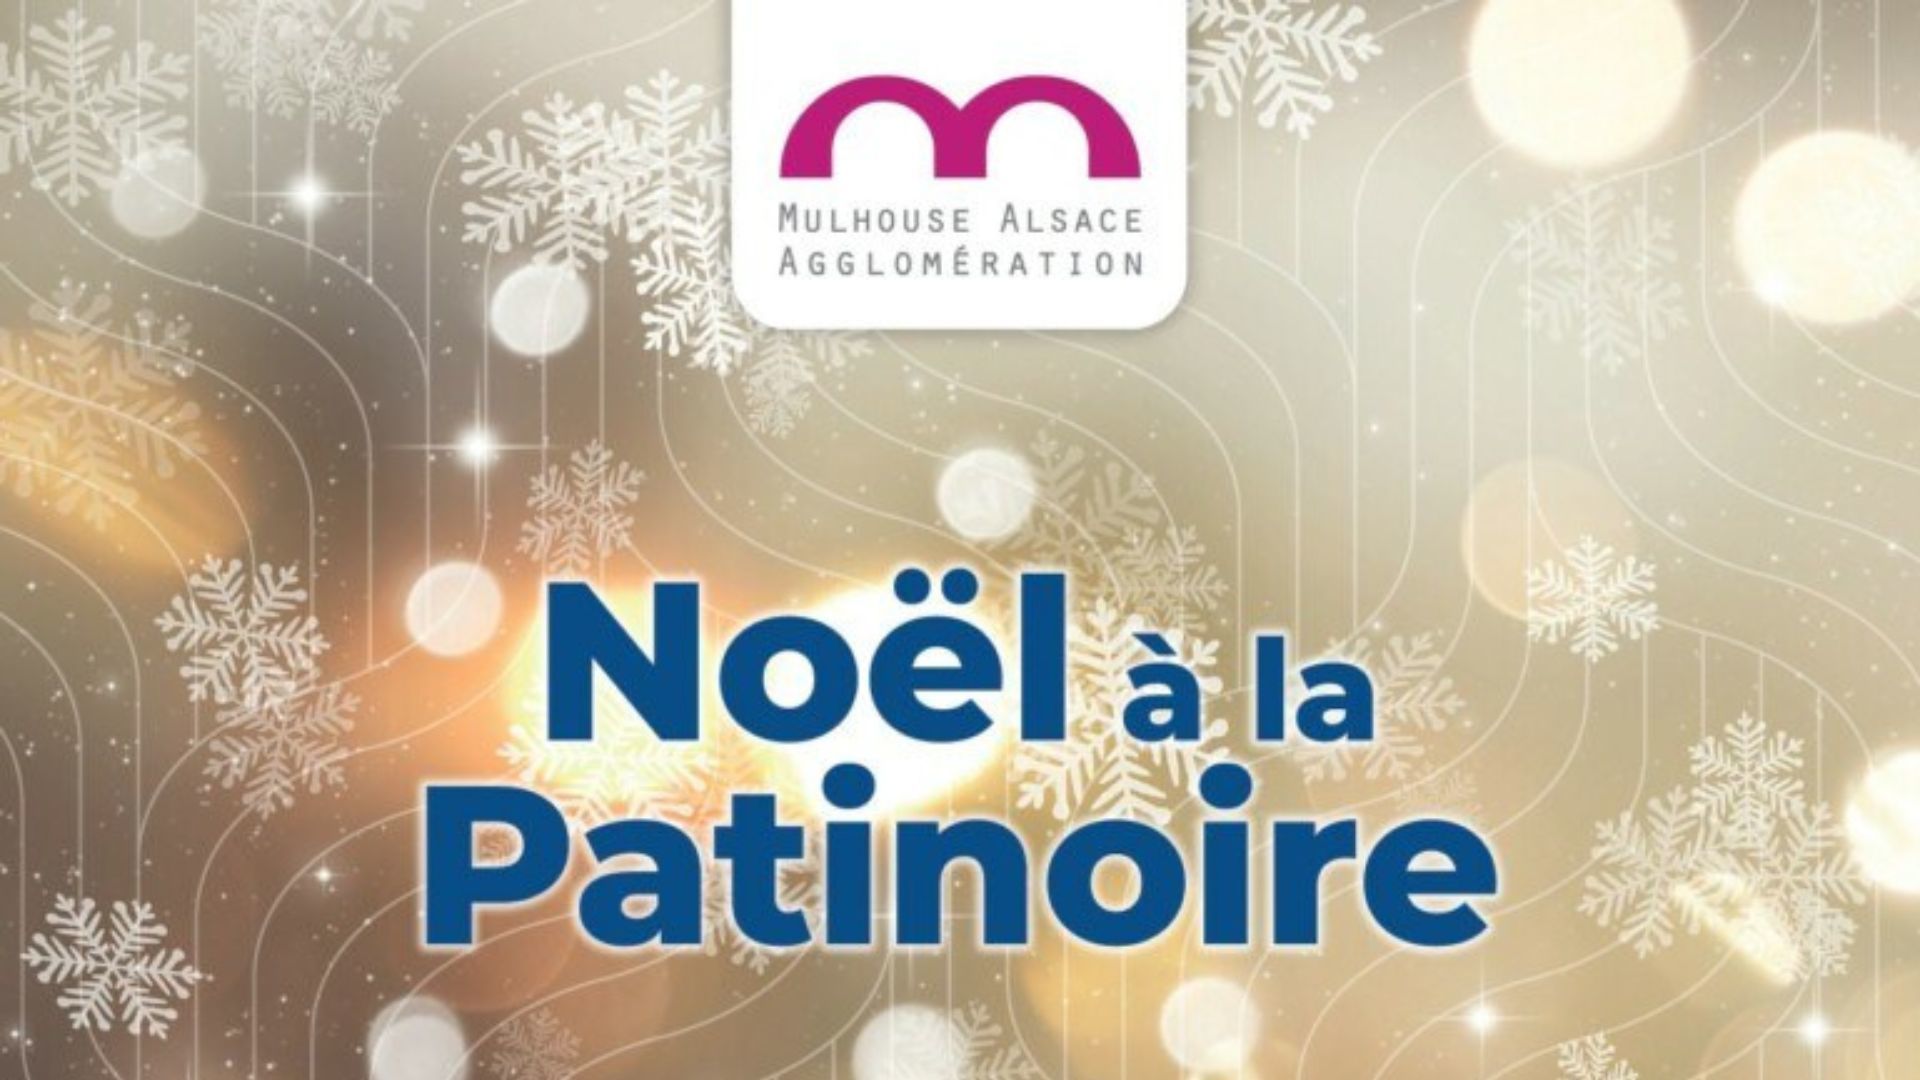 Noël à la patinoire à Mulhouse